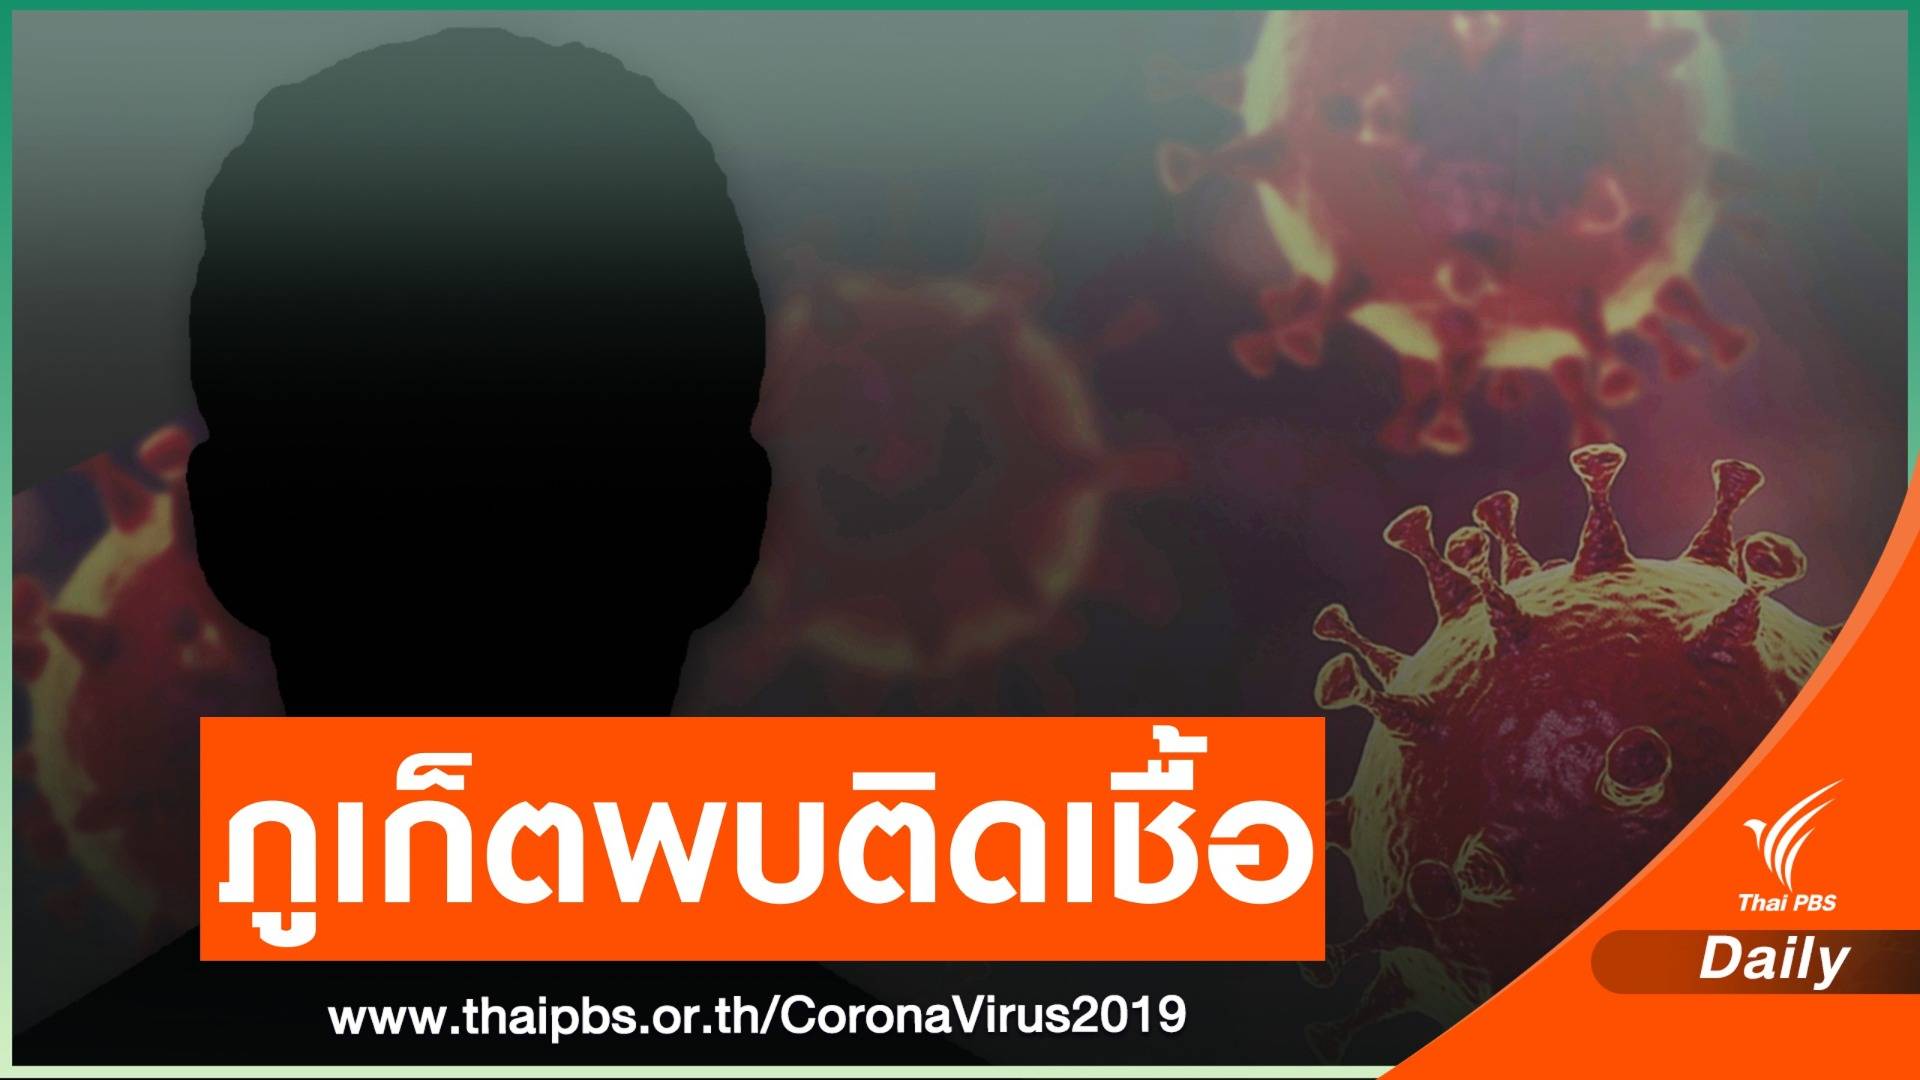 "ภูเก็ต" เร่งสอบไทม์ไลน์ชายไทย อายุ 40 ปี ติดเชื้อ COVID-19 